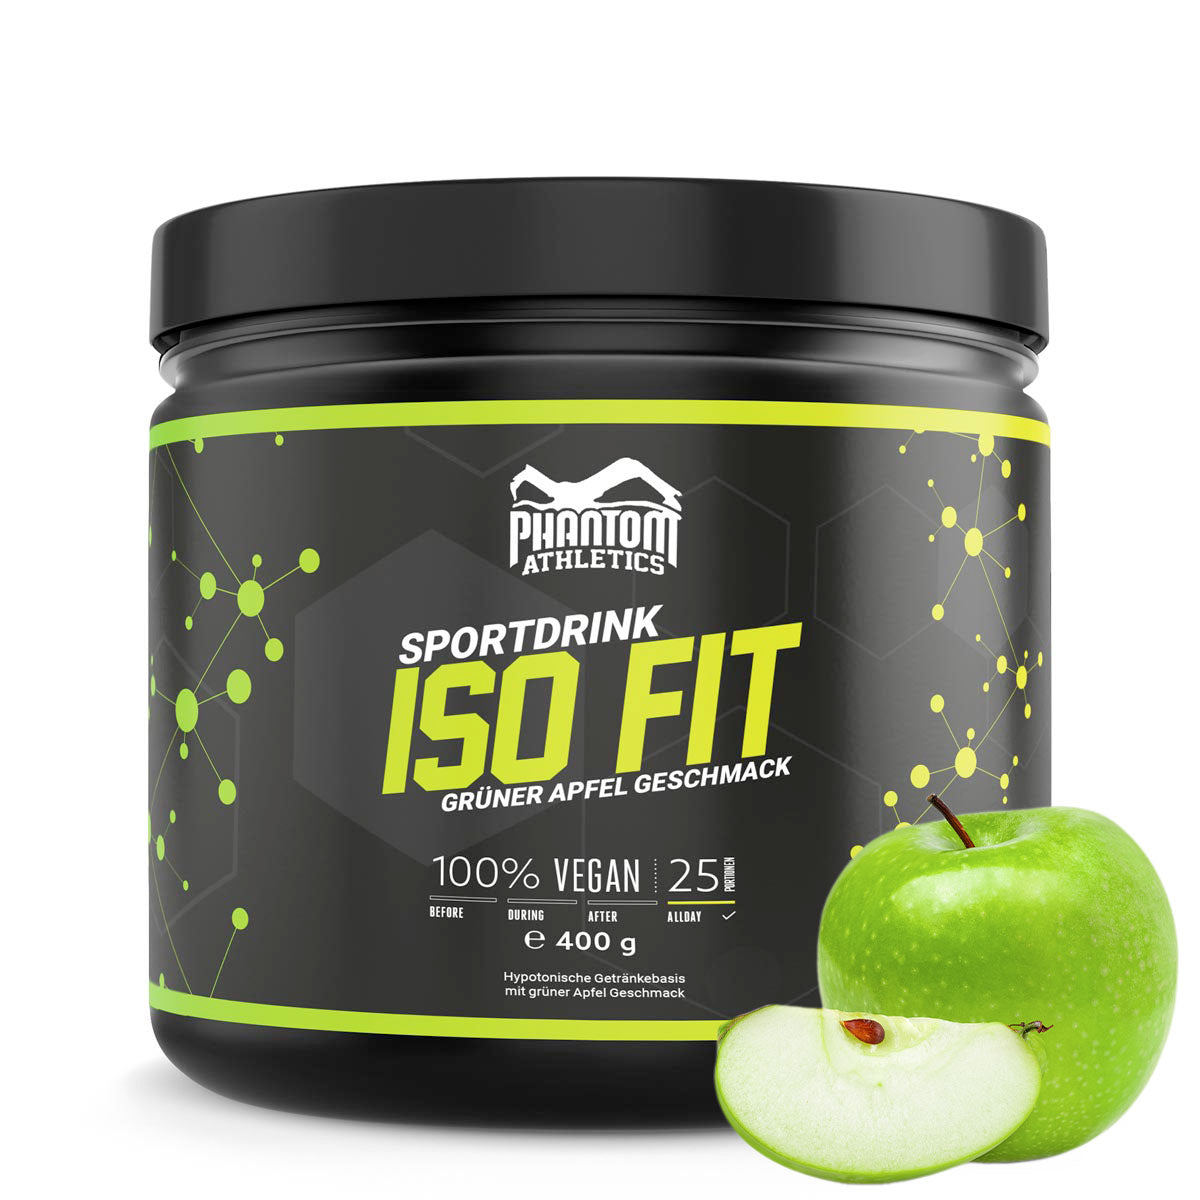 Le complément nutritionnel Phantom ISO FIT vous apporte tout ce dont vous avez besoin pour l'entraînement aux arts martiaux. Maintenant avec un délicieux goût de pomme verte.